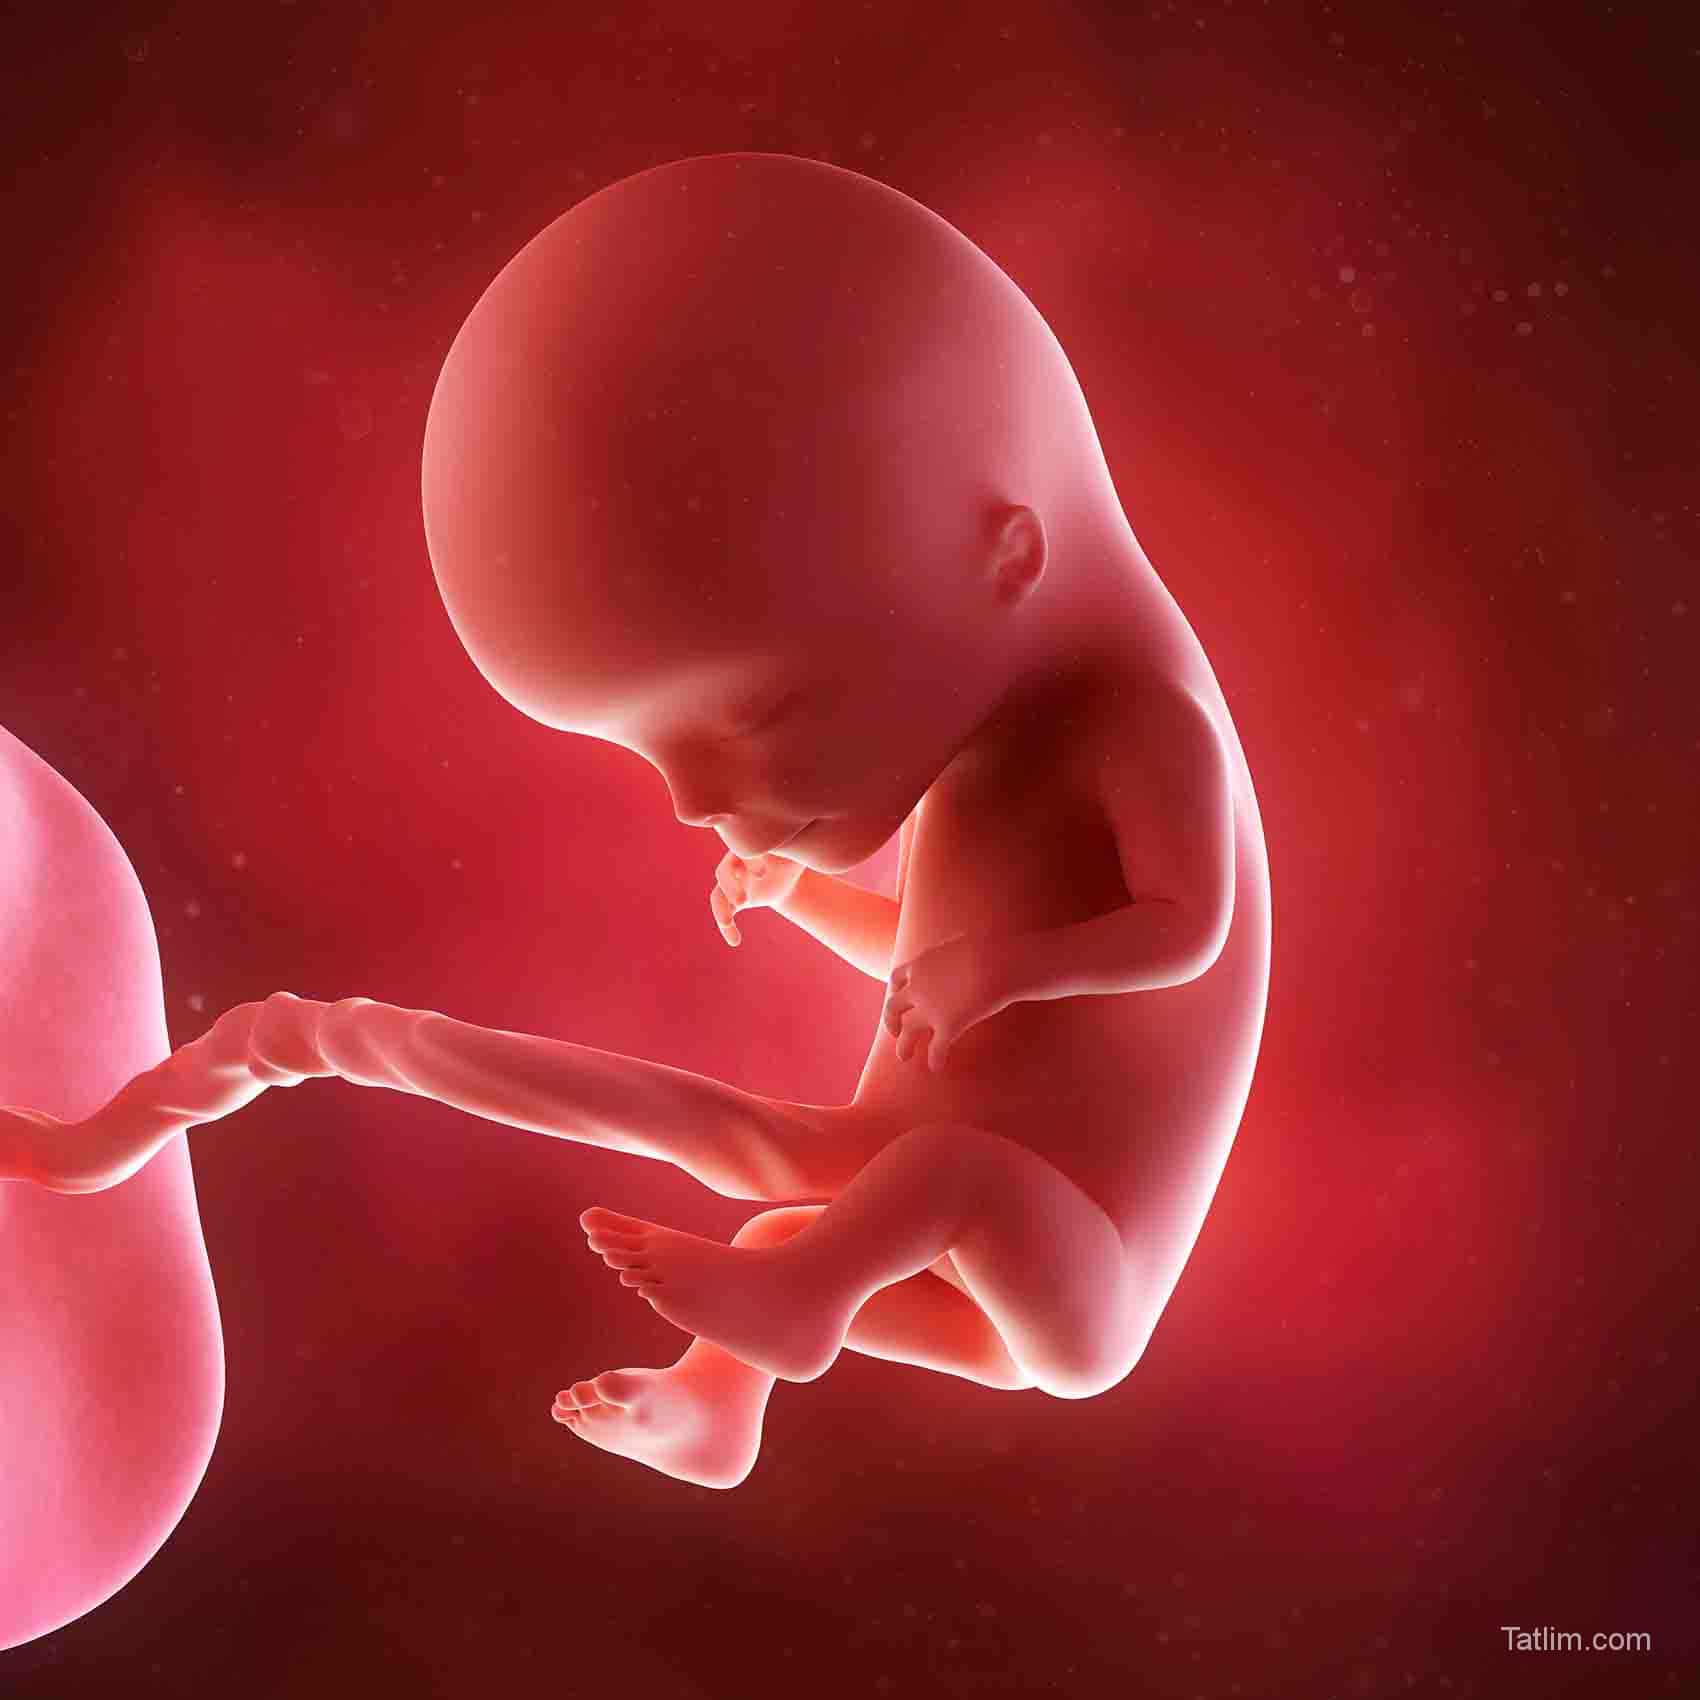 12 недель беременности что есть. Плод ребенка на 12 неделе беременности. Эмбрион на 12 неделе беременности. Плод на 11-12 неделе беременности.